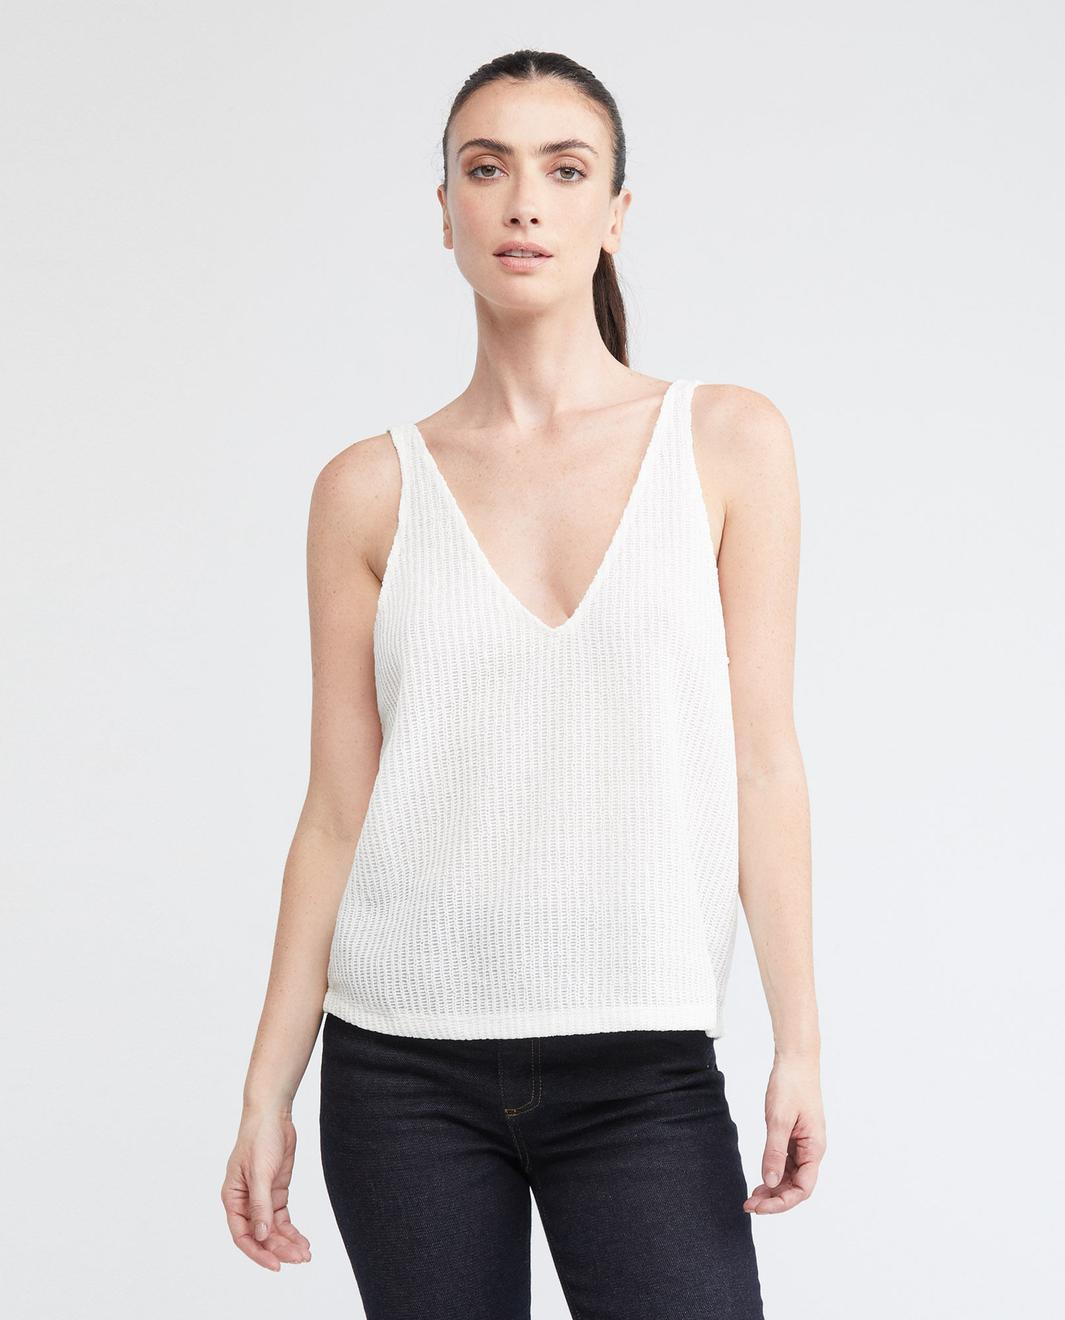 Oferta de Camiseta de Mujer, Tirantes Delgados Escote Profundo en V - Textura Tipo Malla por $69950 en Chevignon